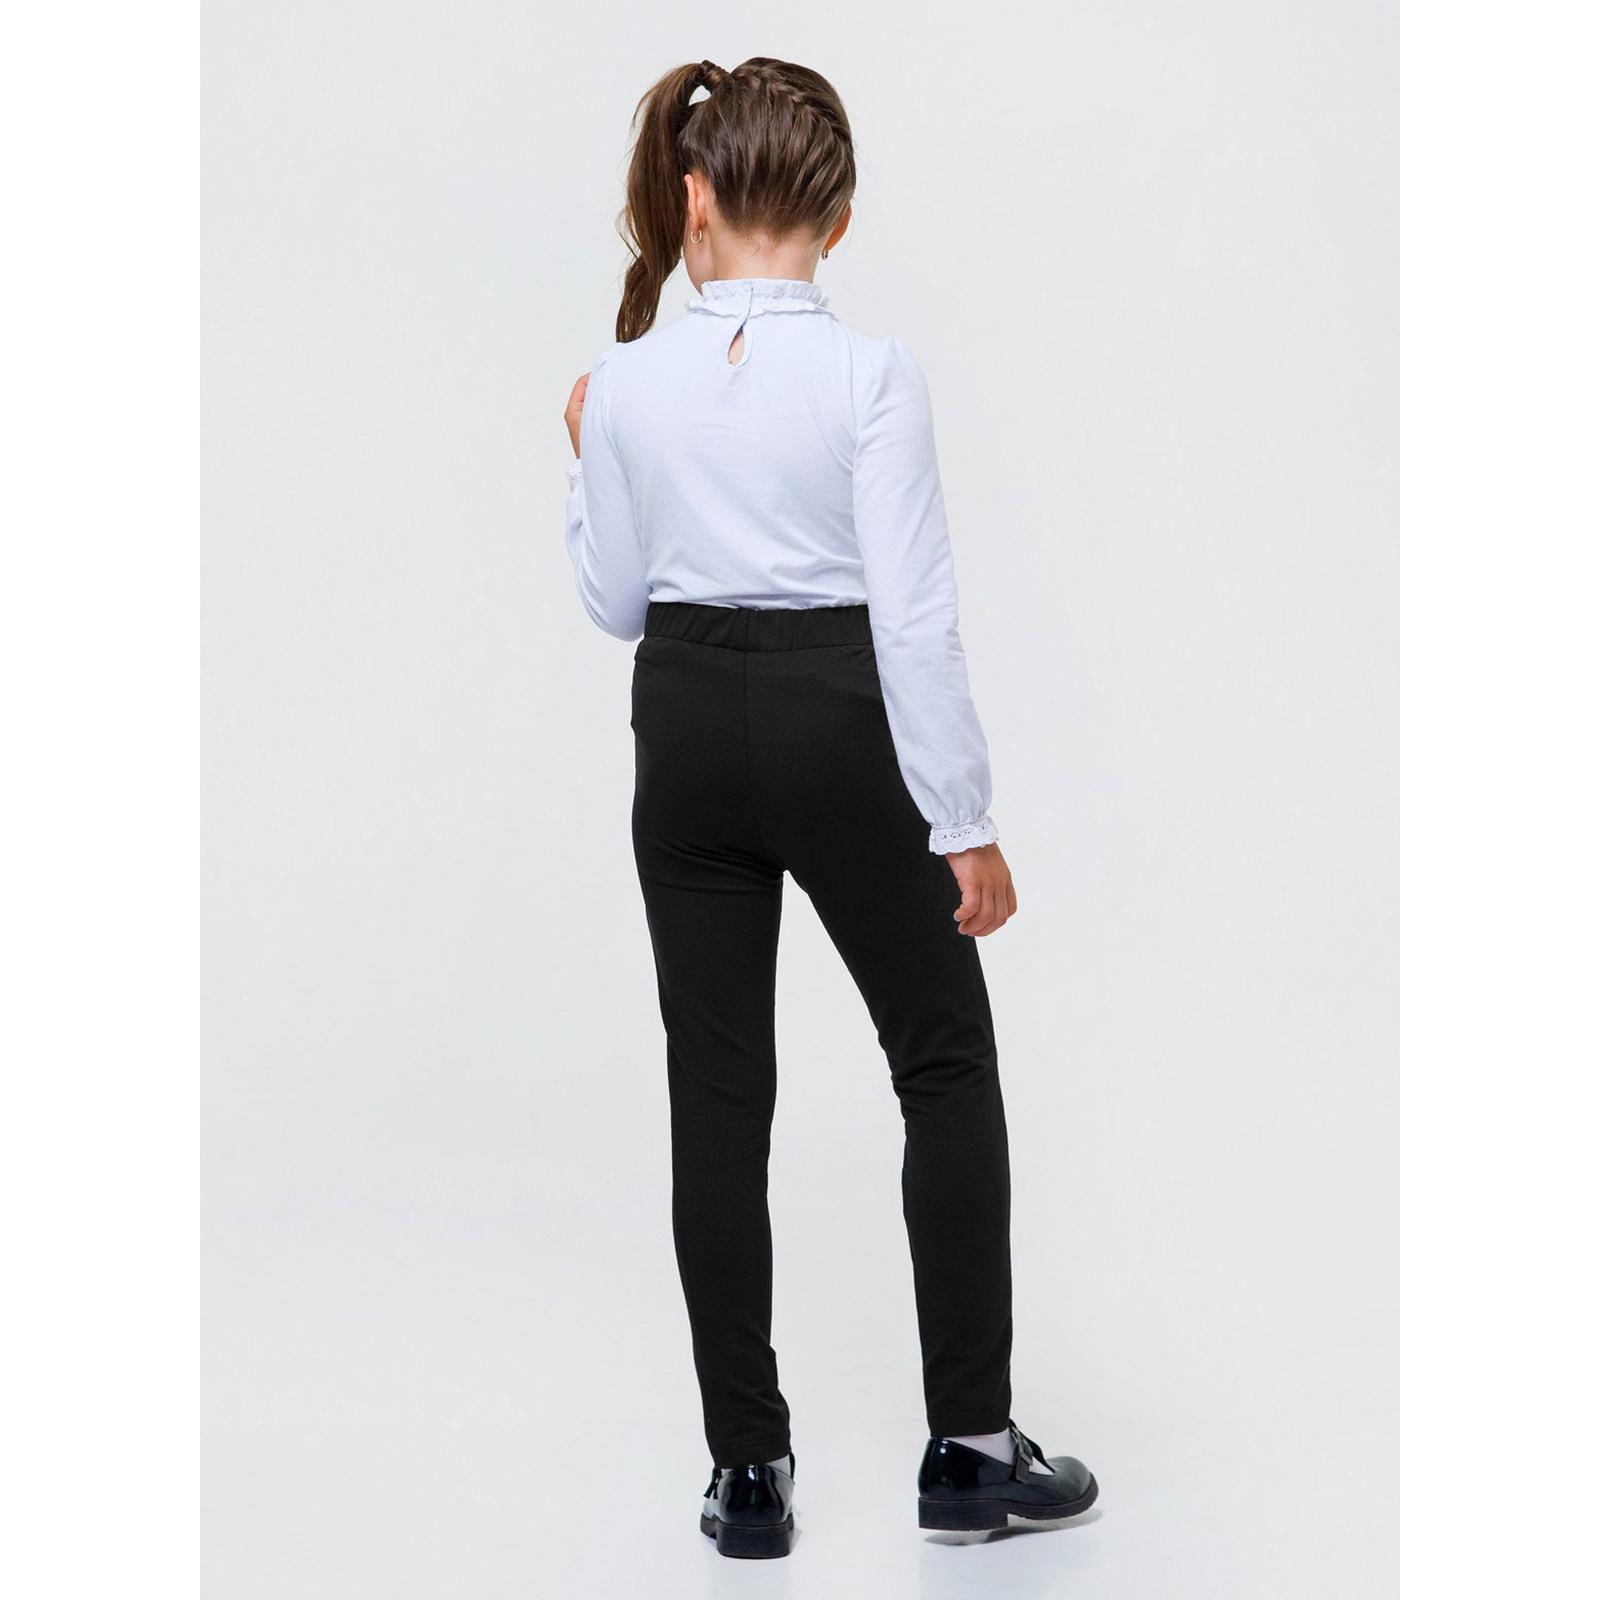 Підліткові брюки для дівчинки, чорні (115427), Smil